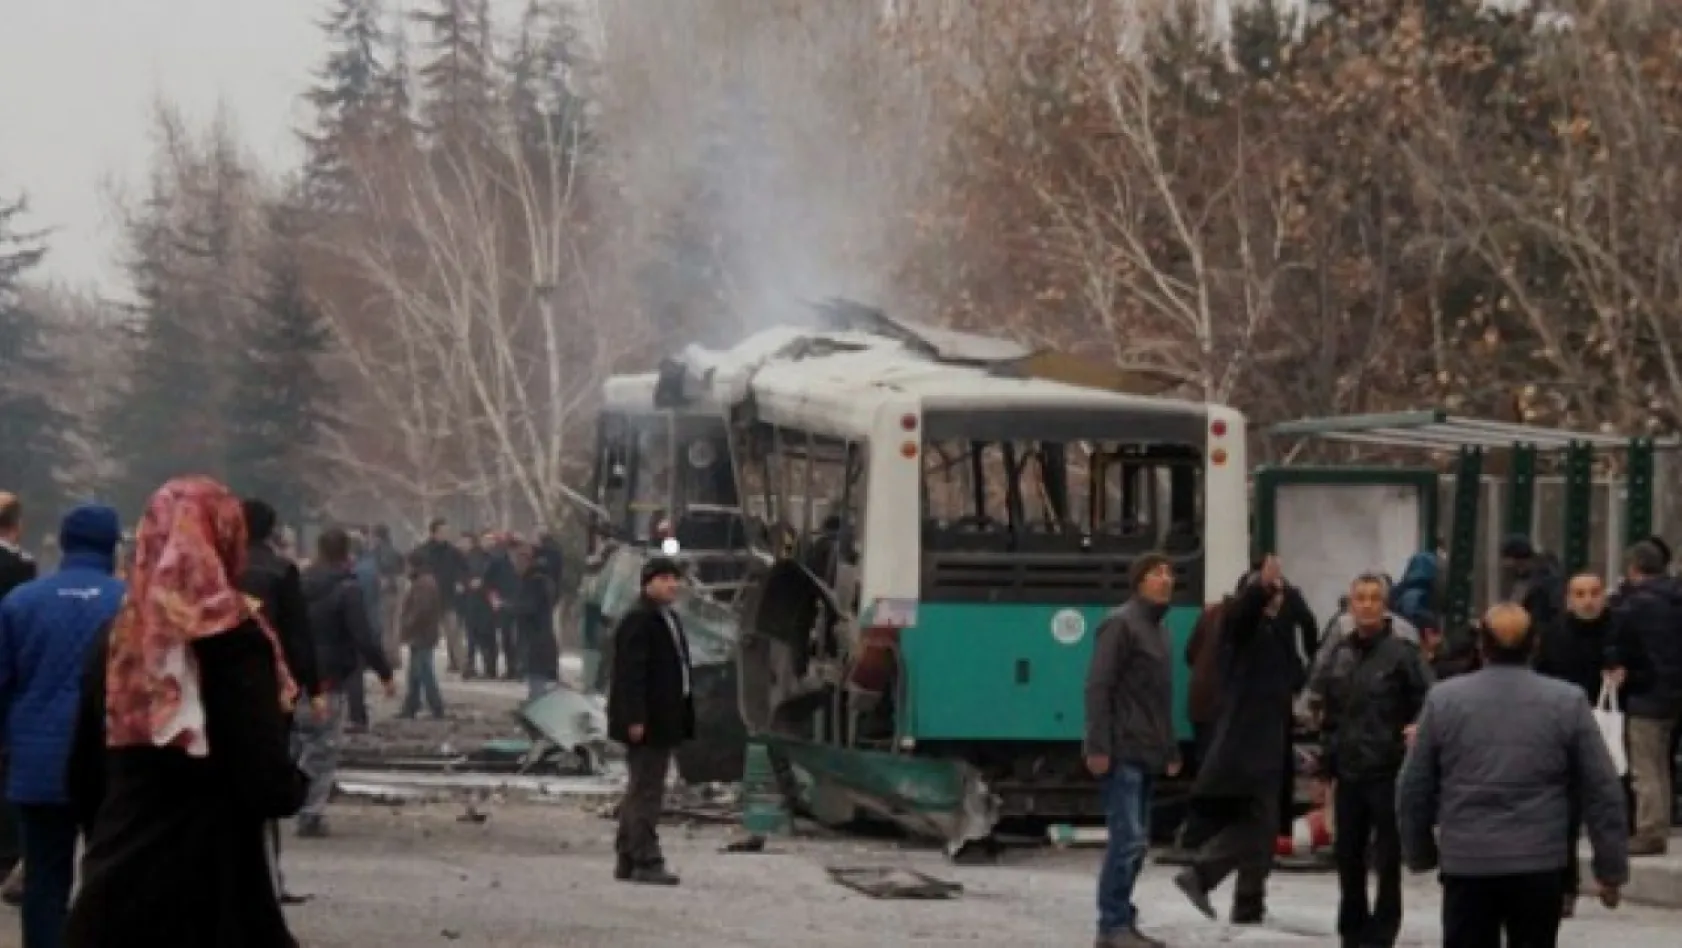 Kayseri'deki 17 Aralık saldırısındaki gerekçeli karar açıklandı